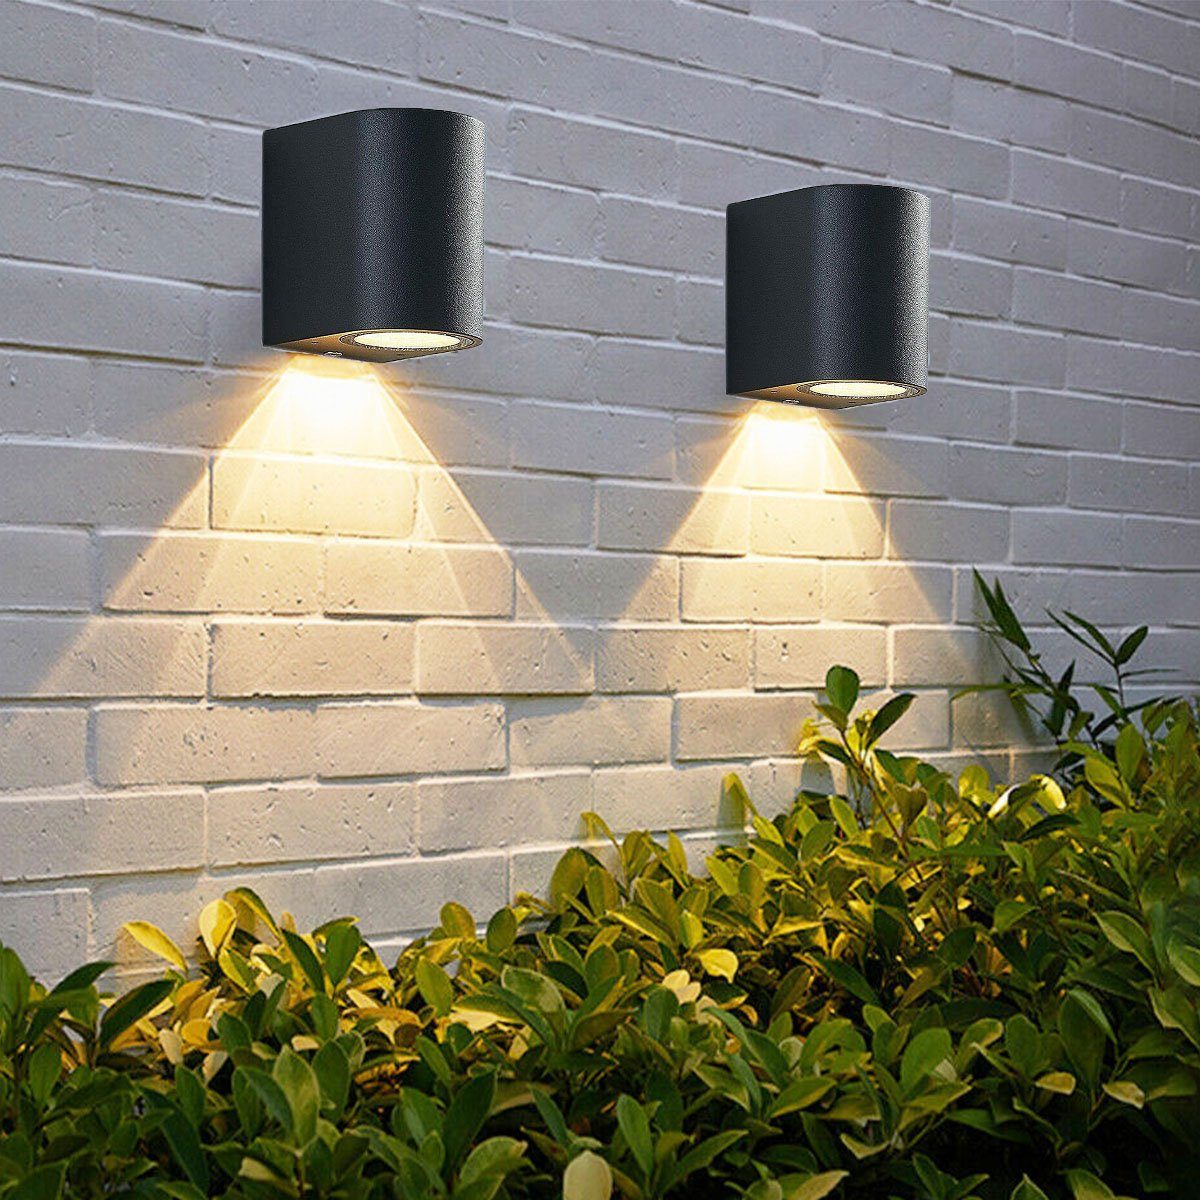 oyajia LED Wandleuchte 2x 3W Wandlampe,IP65 Anthrazit Downlight, Warmweiß